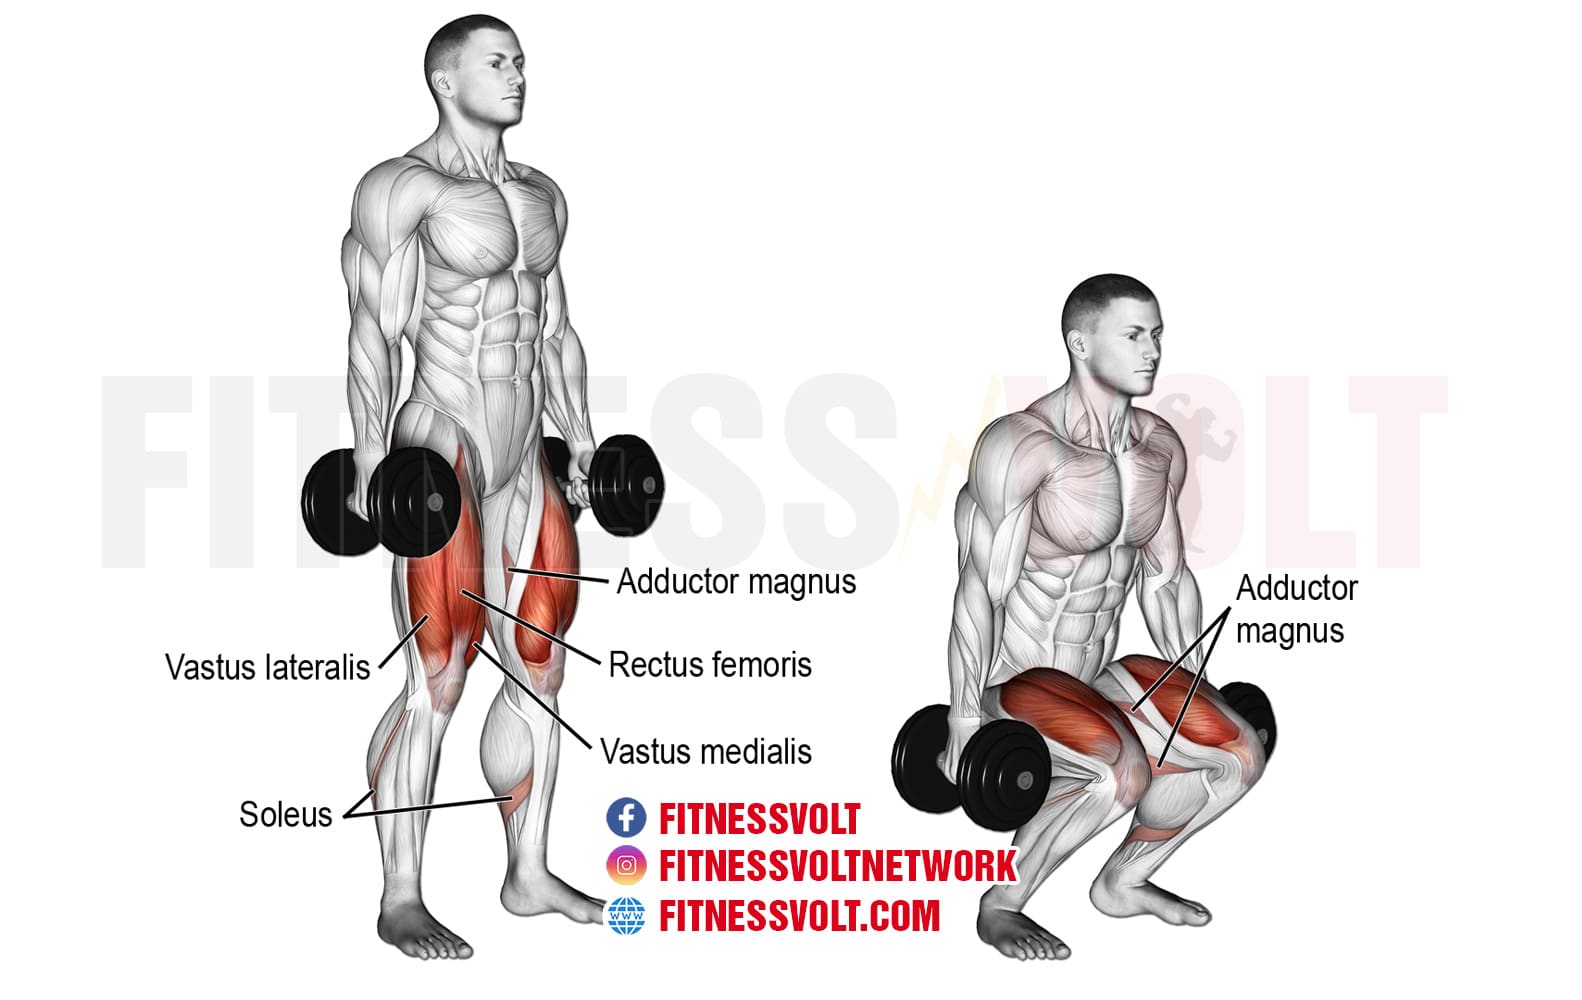 https://fitnessvolt.com/wp-content/uploads/2019/04/dumbbell-squat.jpg